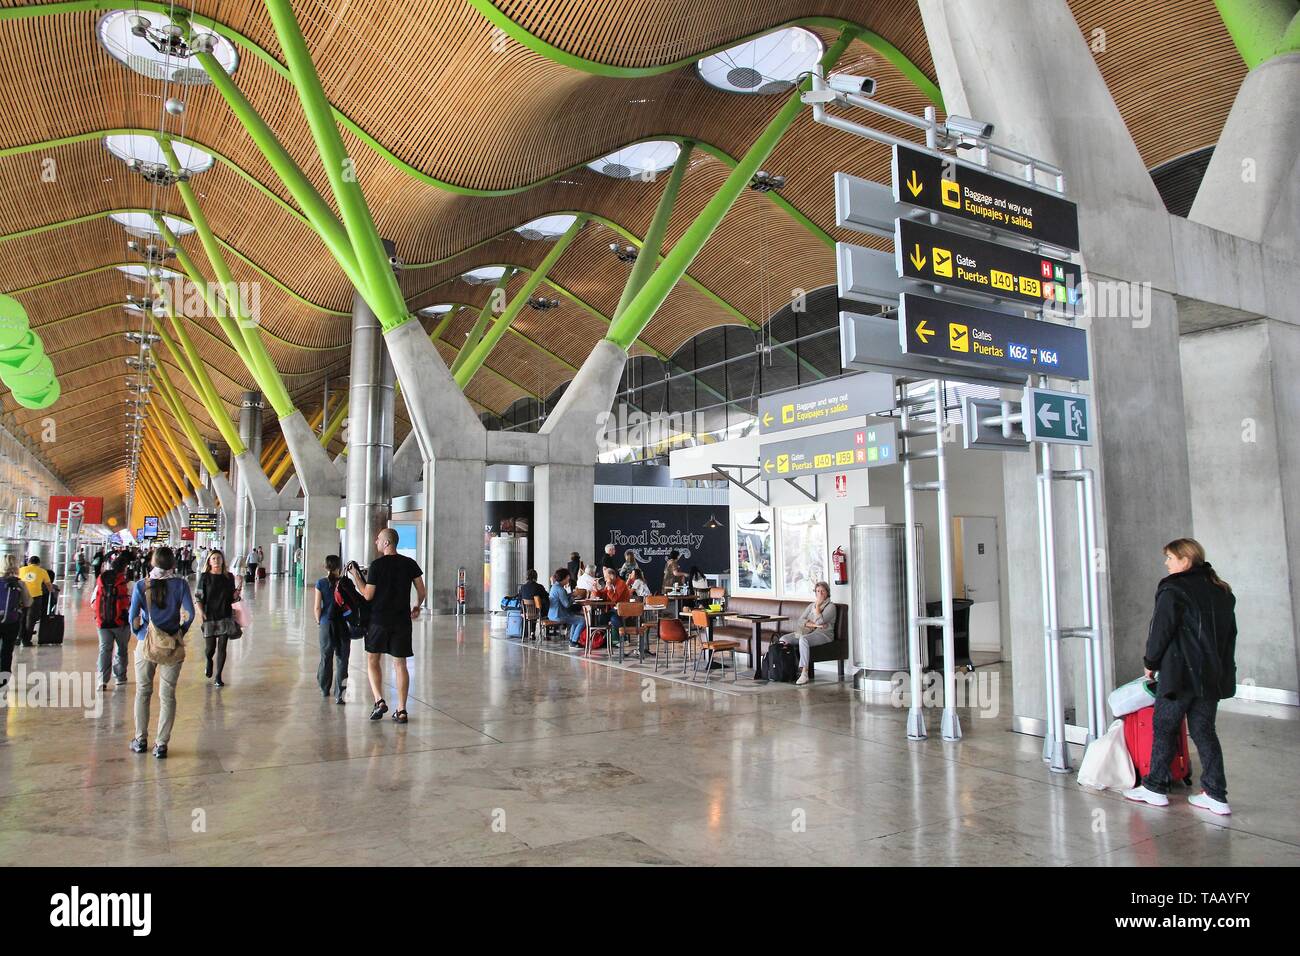 MADRID, Spagna - 5 ottobre 2014: Passeggeri visita il Terminal 4 dell'aeroporto di Madrid Barajas. Il famoso terminale 4 è stata progettata da Antonio Lamela e Richa Foto Stock